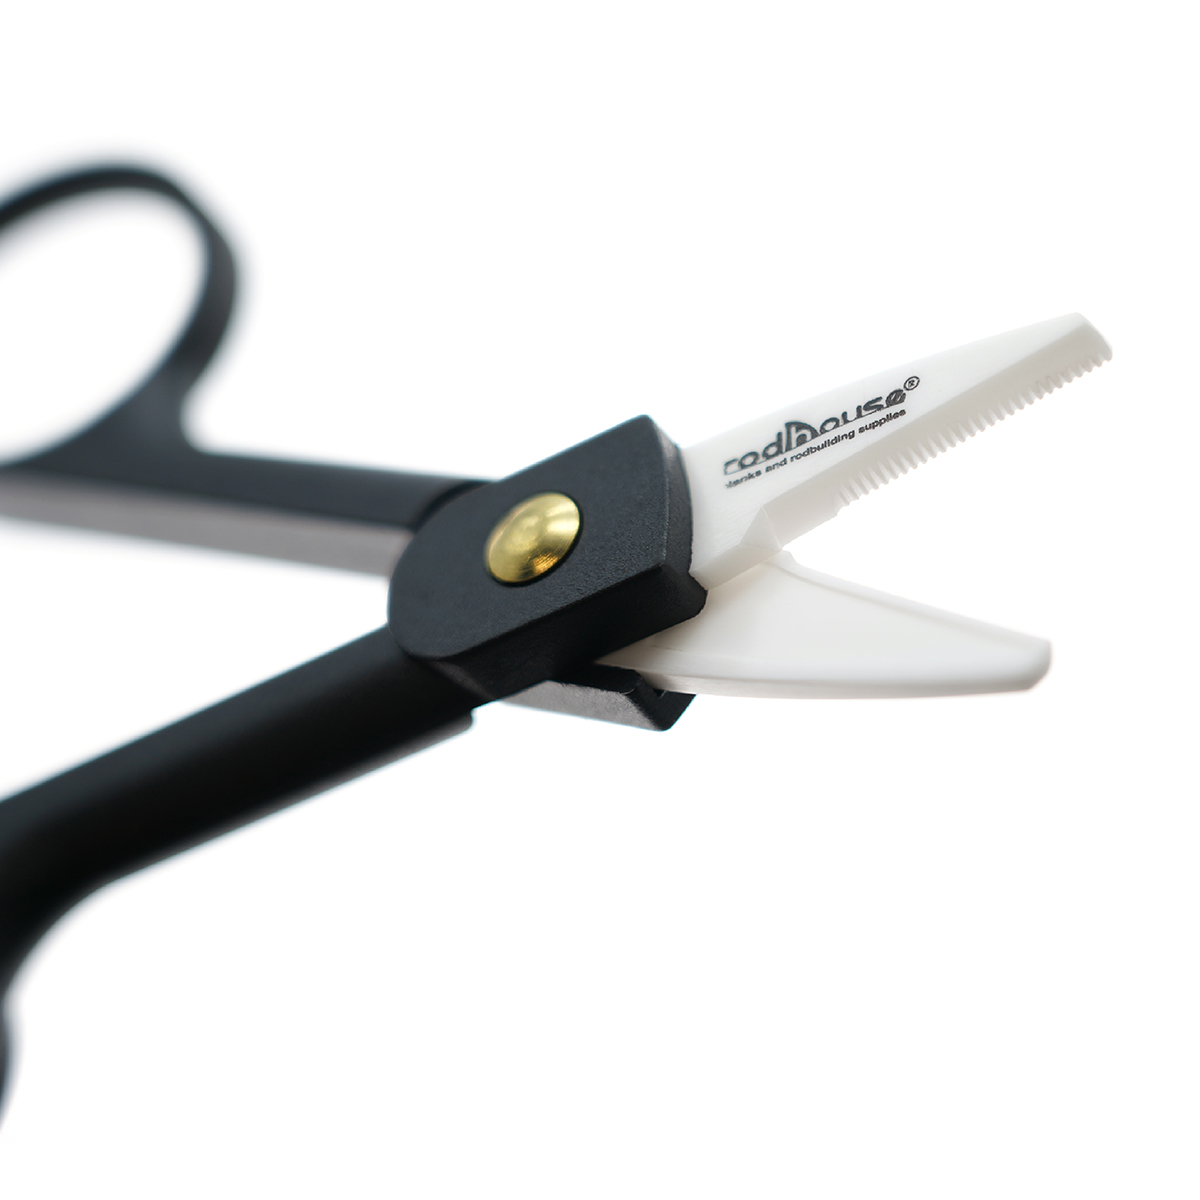 Ceramic braided line scissors - Edge Rods Europe